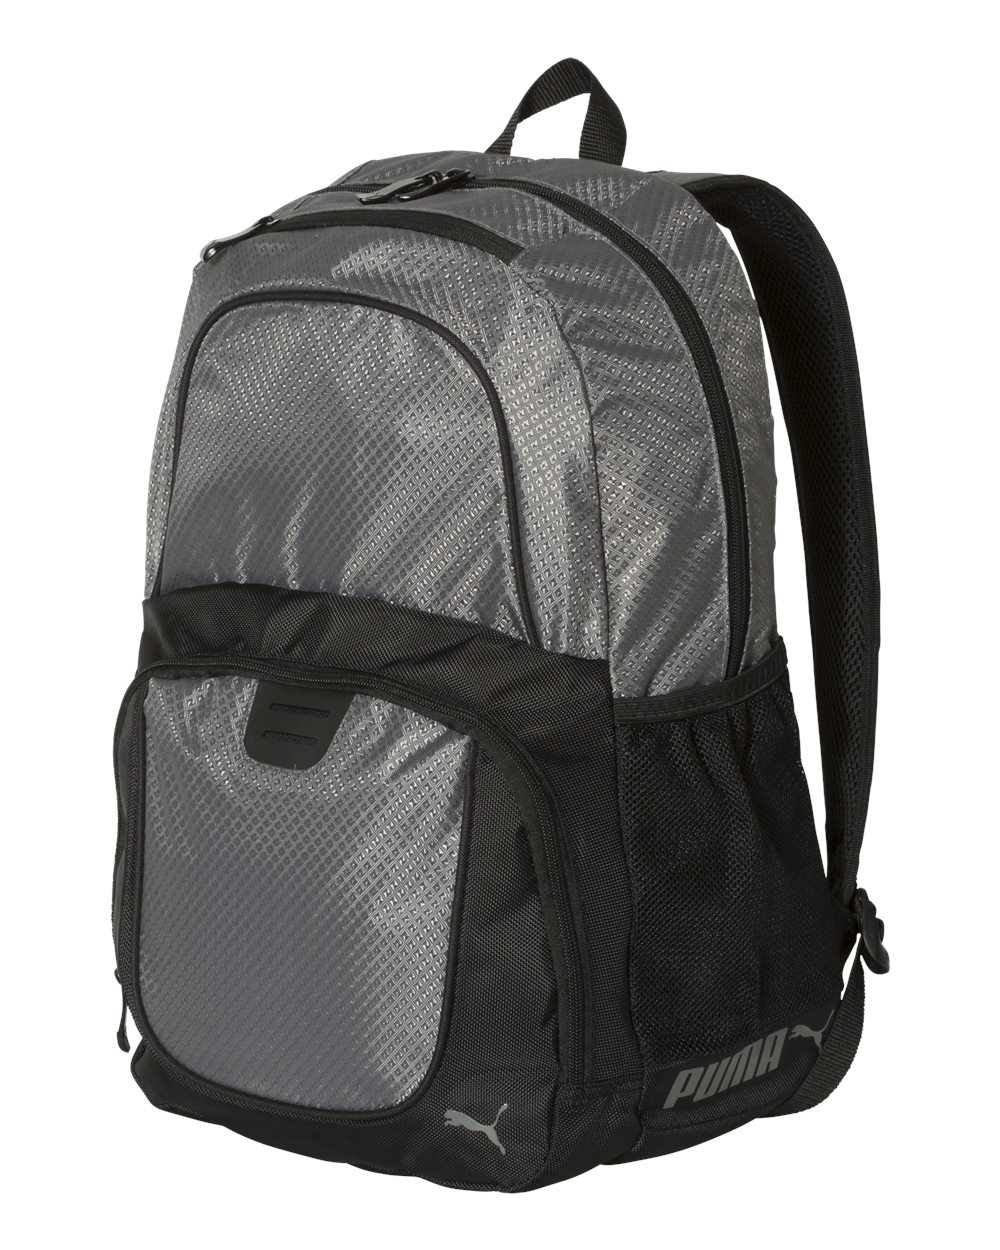 Puma PSC1028 - 25L Backpack